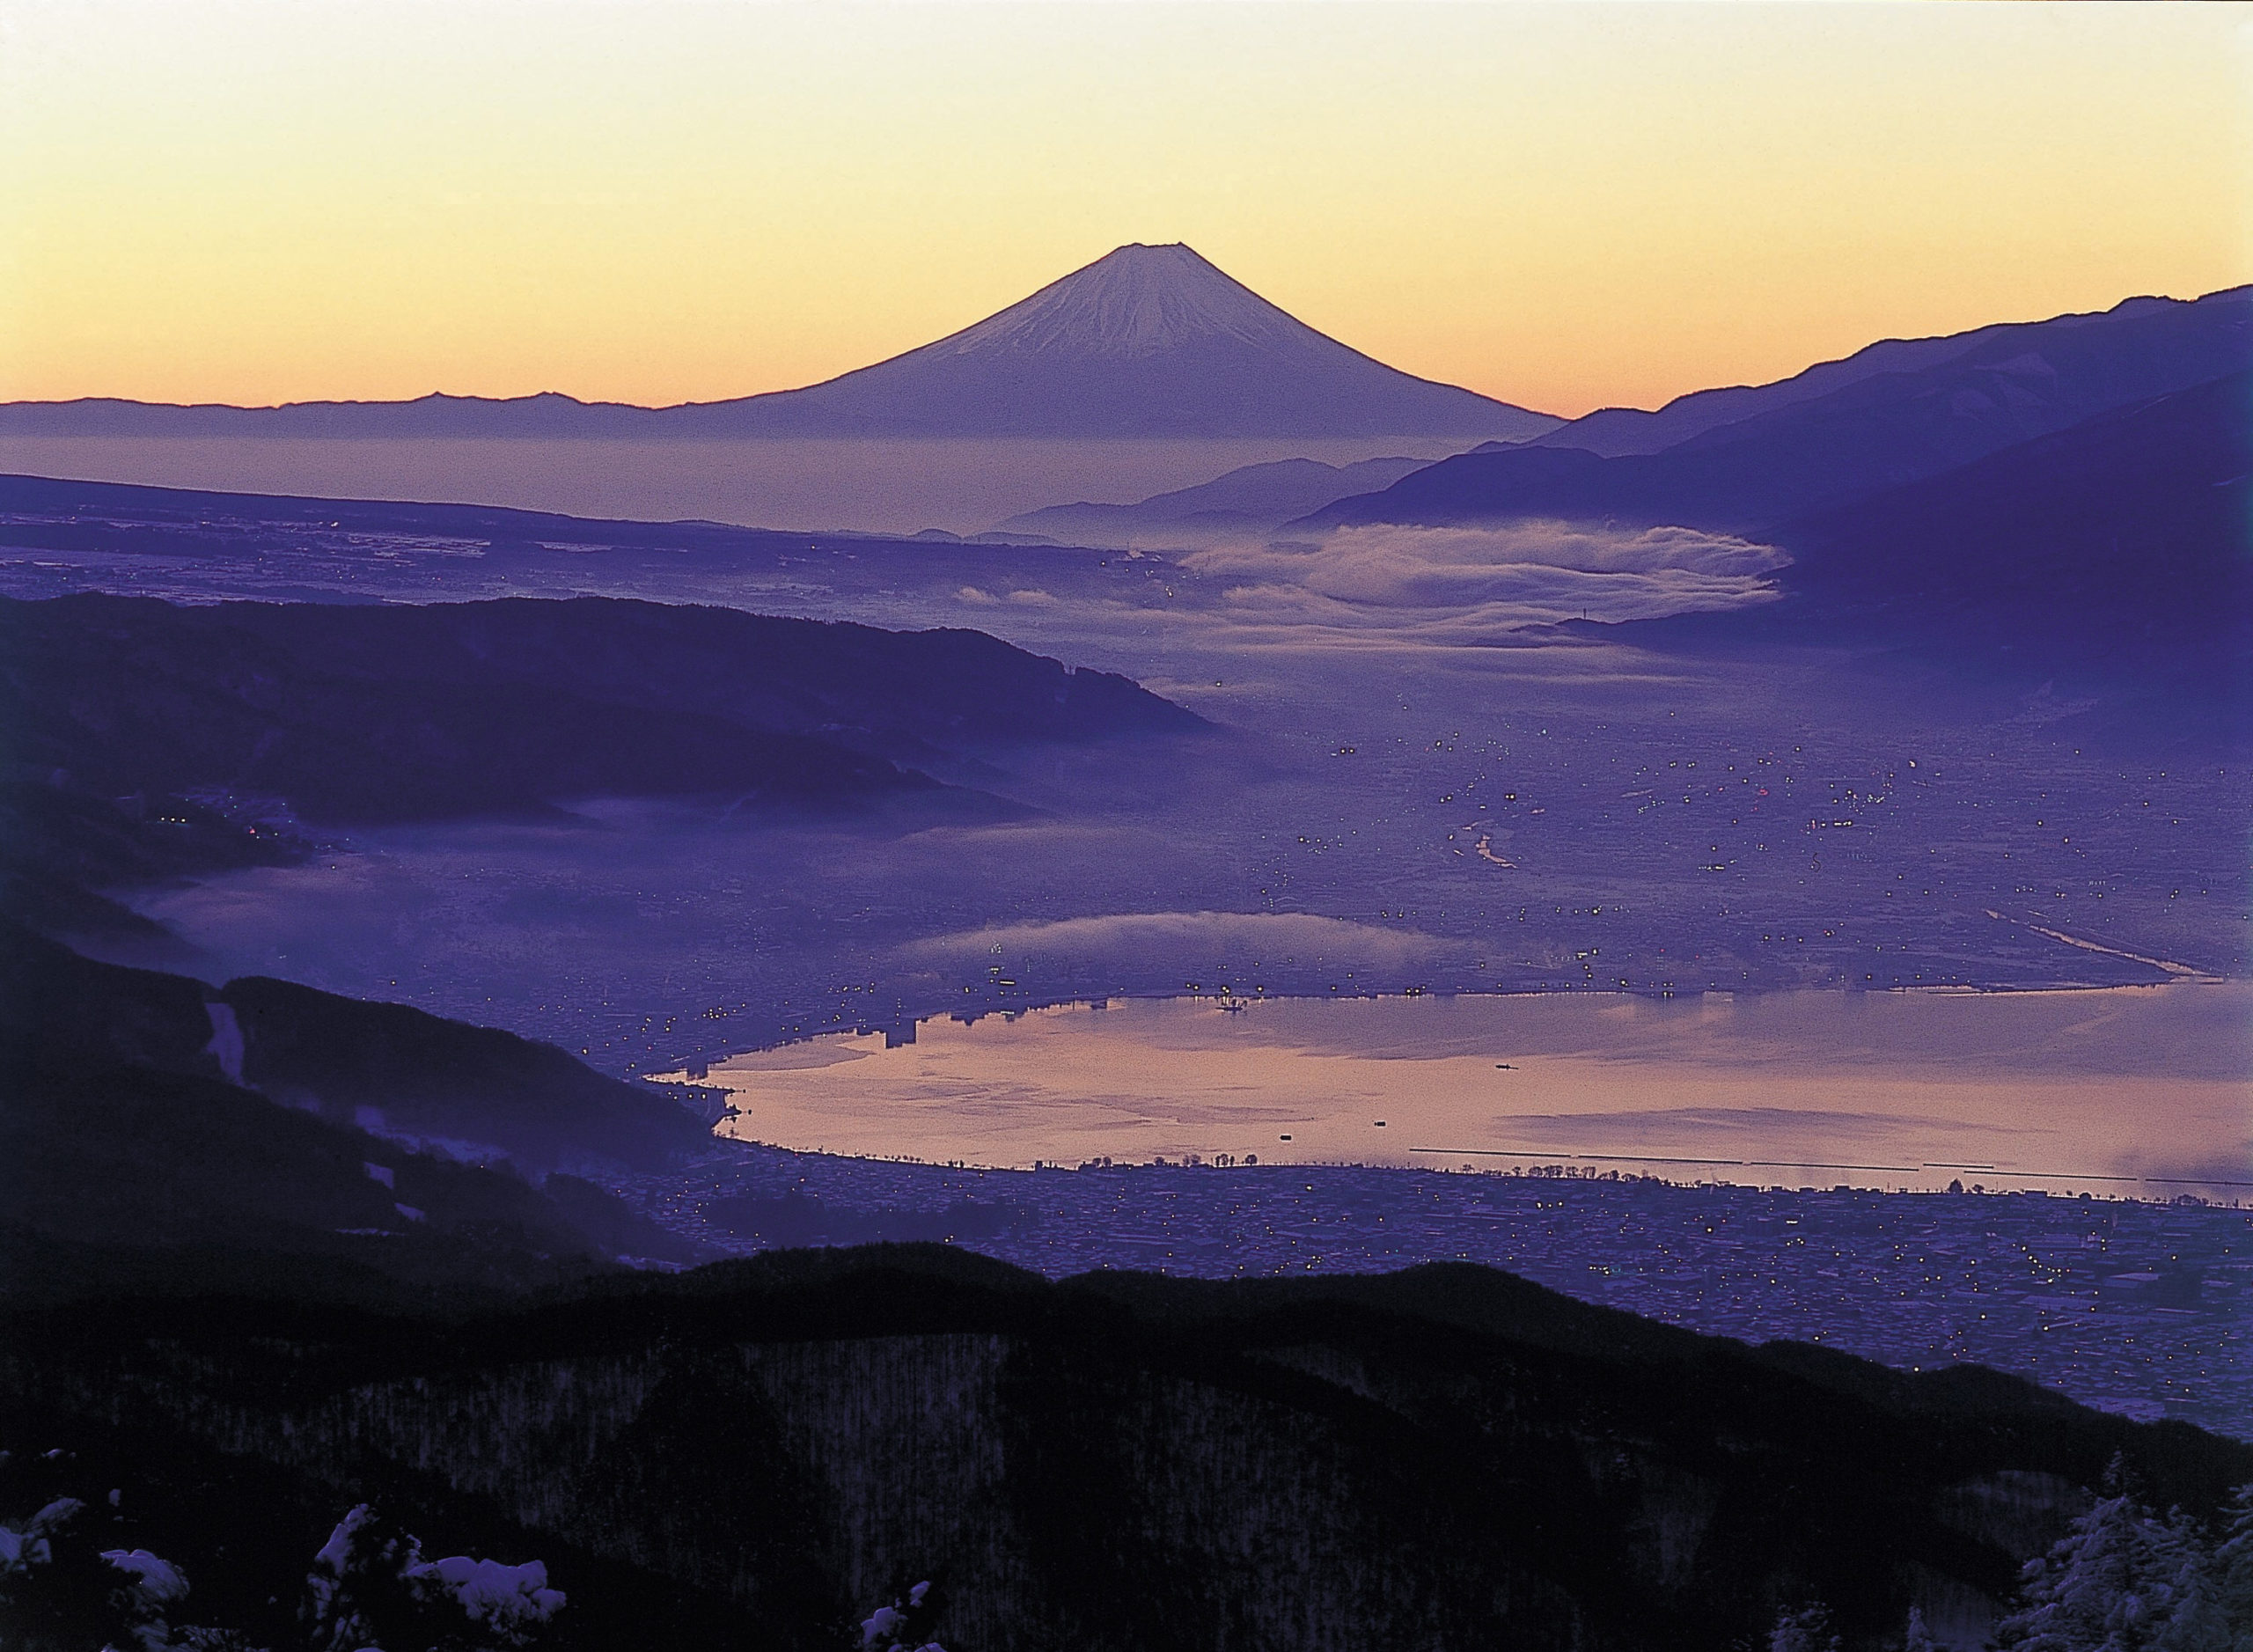 諏訪湖と富士山